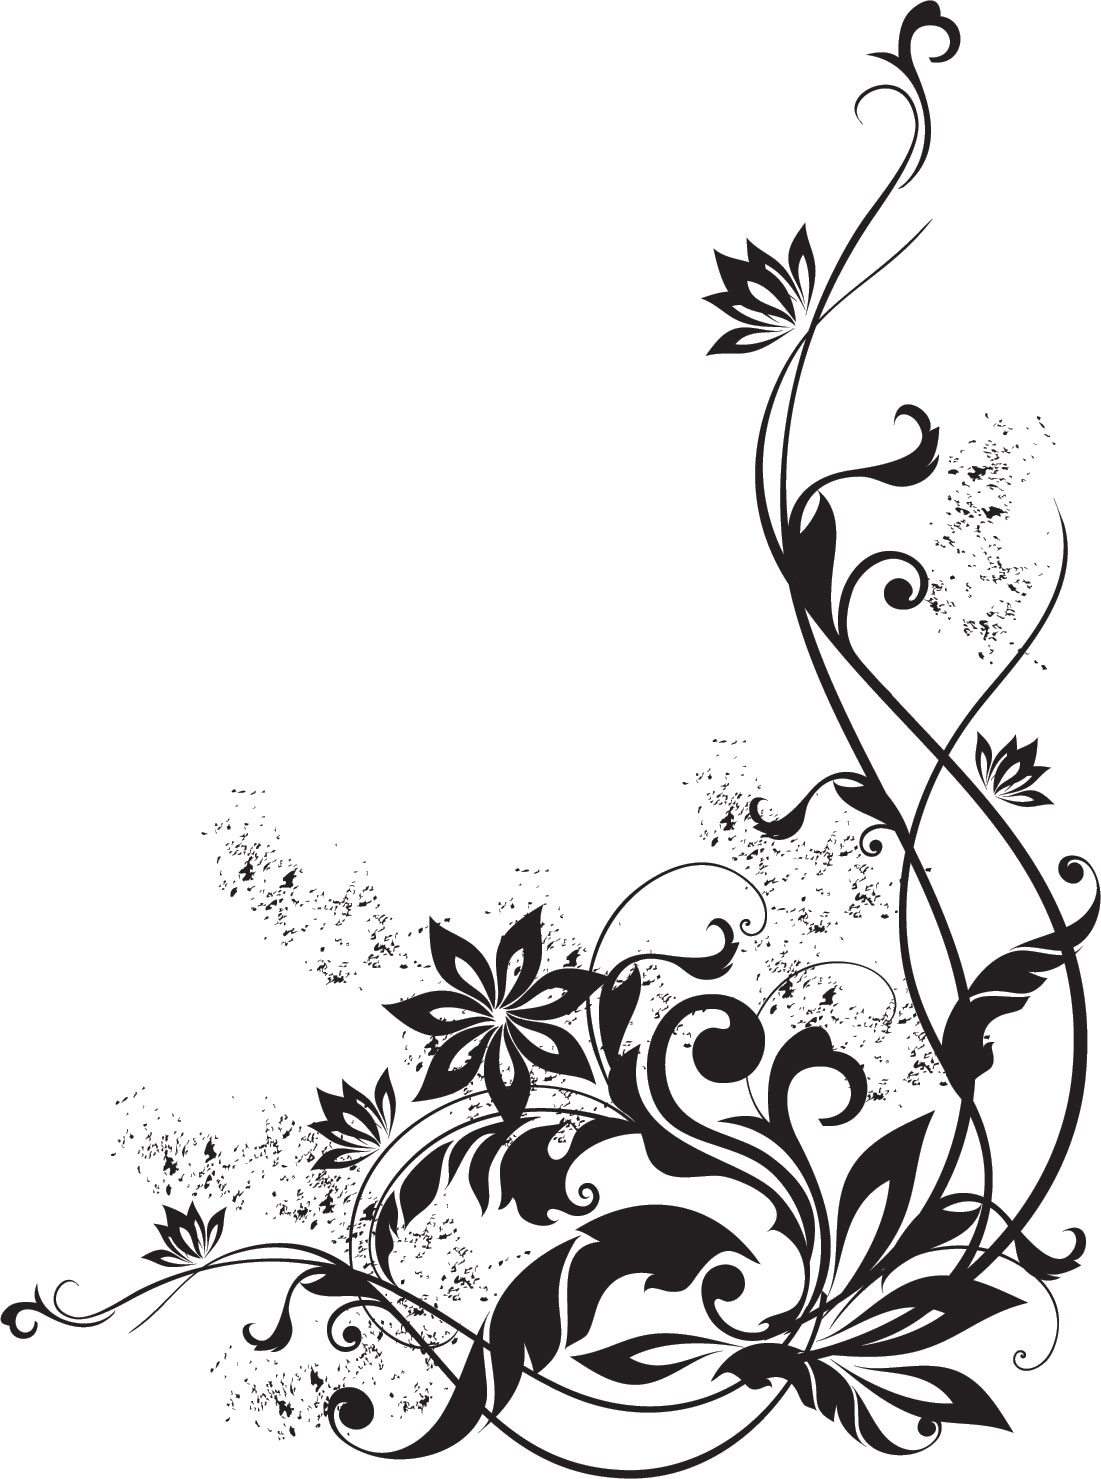 白黒 モノクロの花のイラスト フリー素材 ライン線 コーナー用no 863 白黒 葉 インク